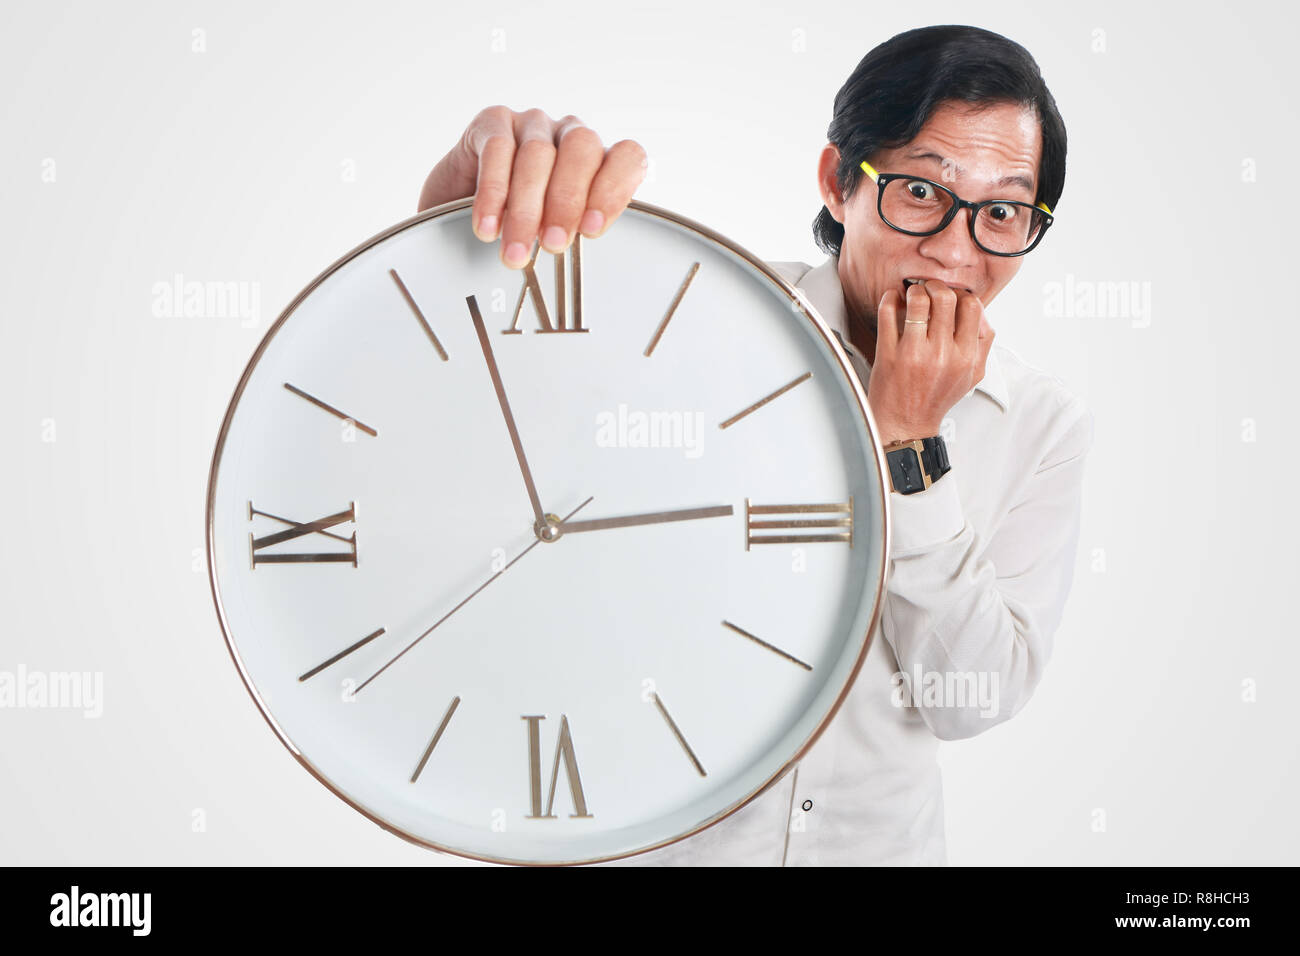 Foto immagine ritratto di un divertente giovane imprenditore asiatico sembrava sconvolto e preoccupato mentre mostra un orologio che egli attesa, close up ritratto, tempo o morti Foto Stock